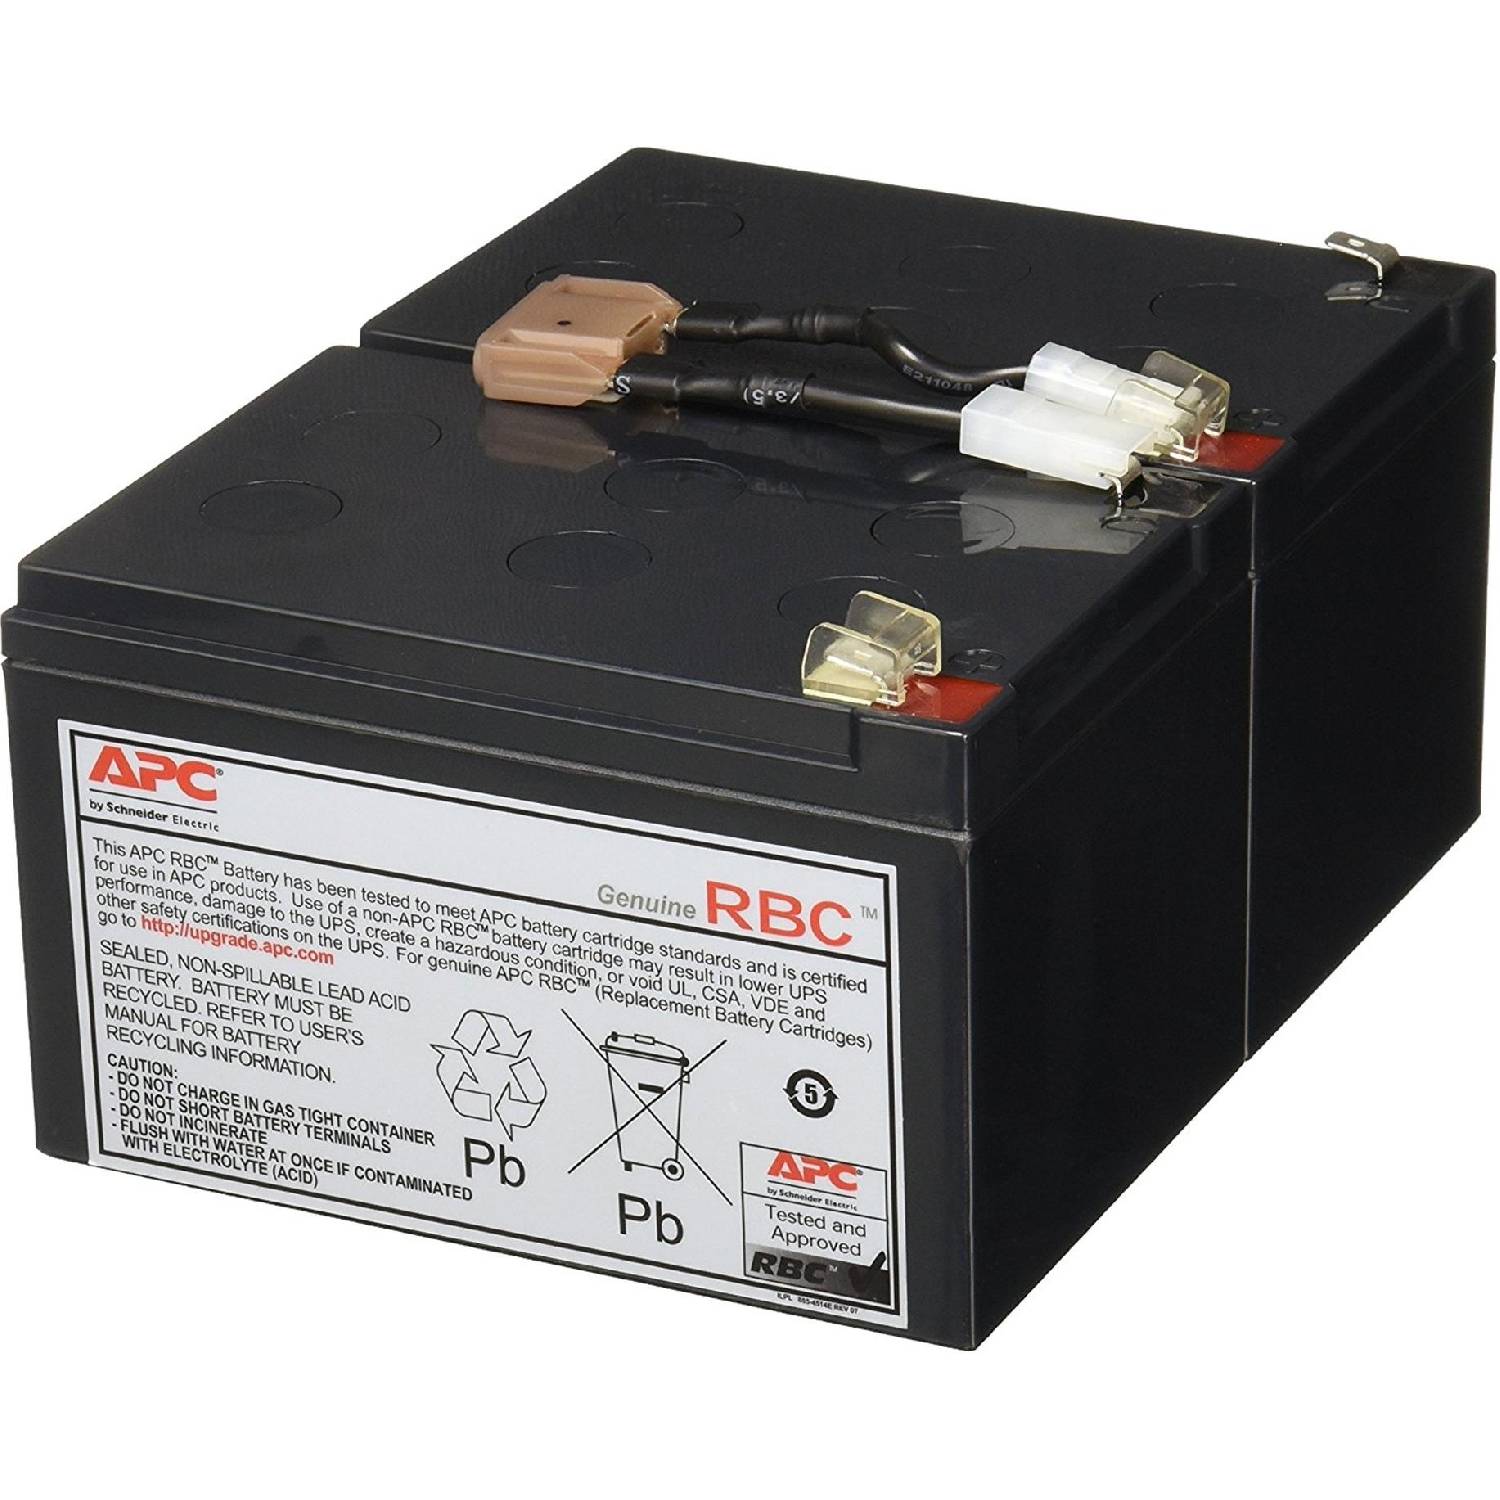 Apc batteries. Аккумулятор APC rbc6. ИБП APC Smart ups 1000 аккумулятор. APC батарея APC apcrbc143. APC аккумуляторы для ИБП.